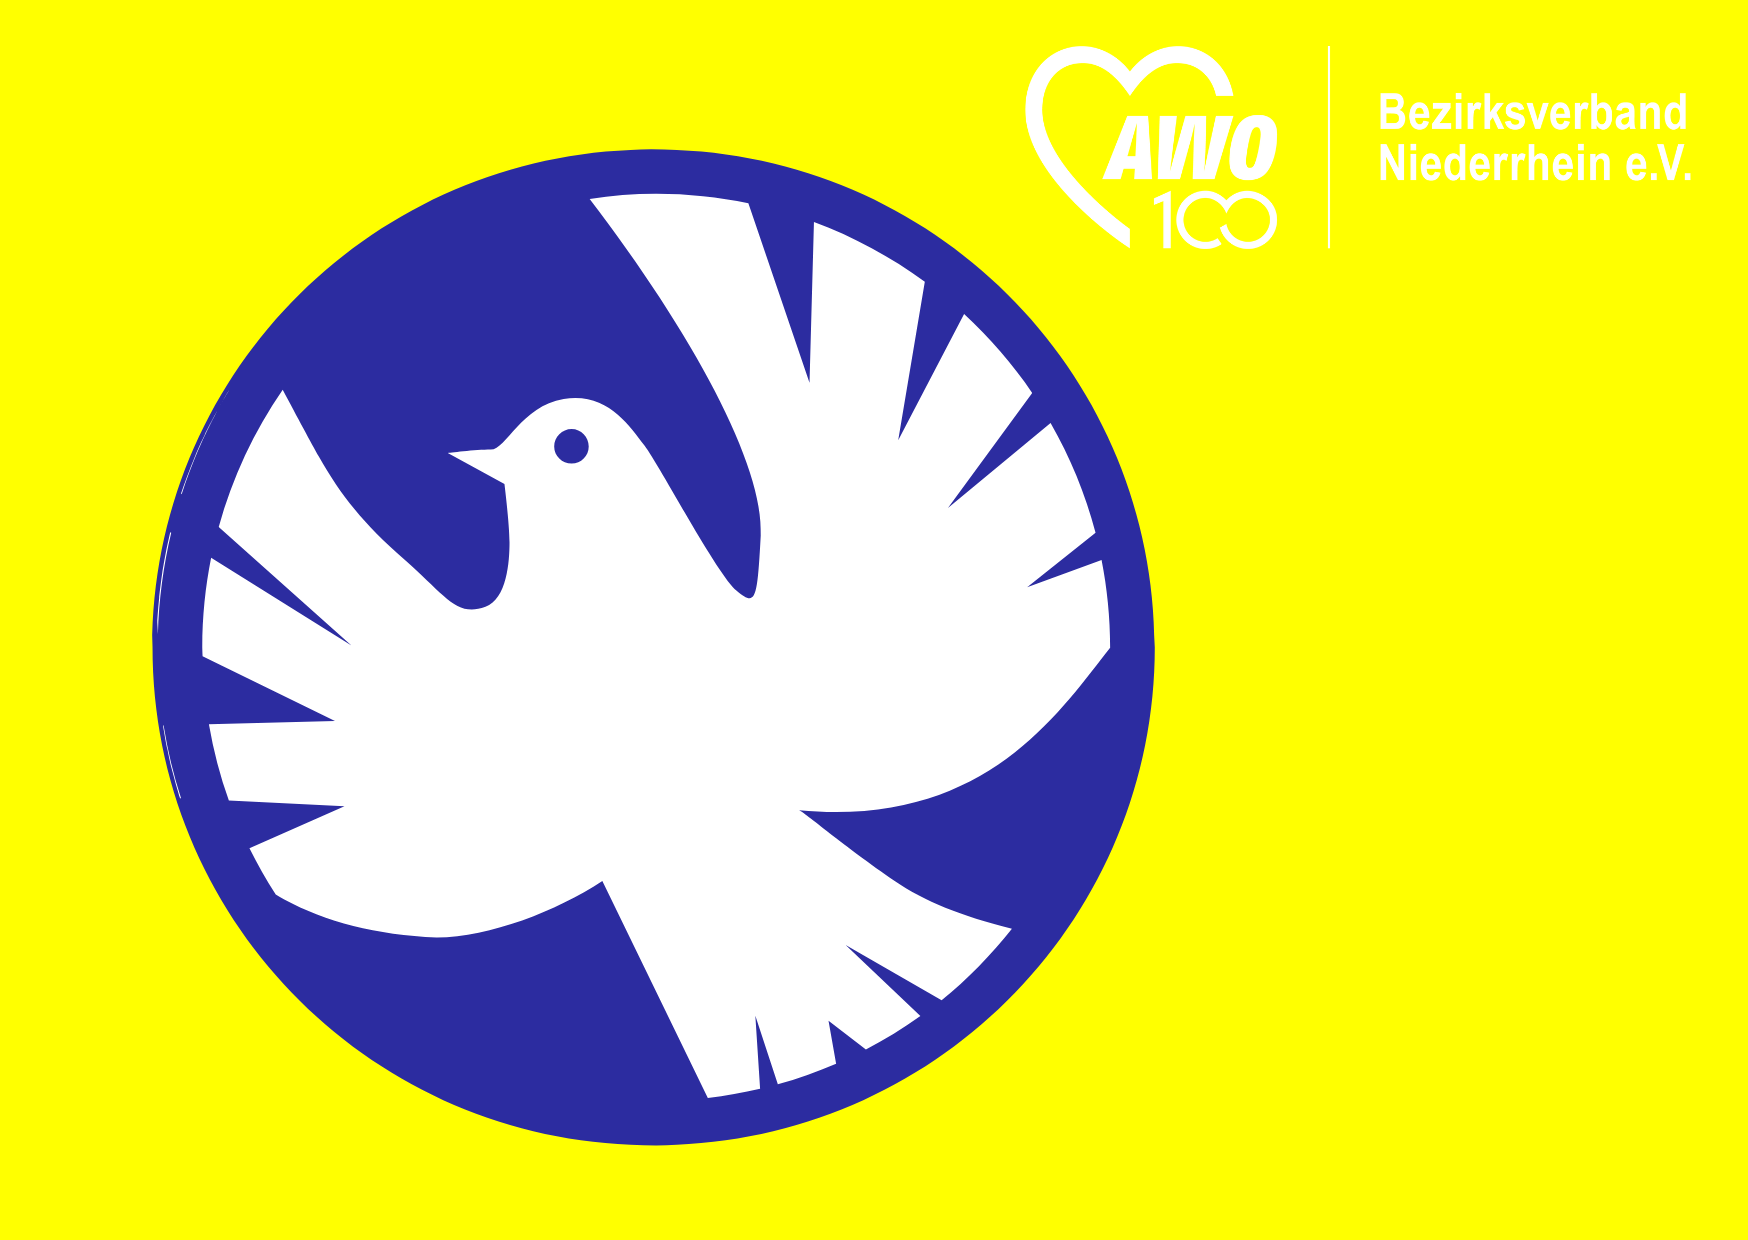 Das Bild zeigt eine Friedenstaube auf blau-gelben Untergrund und das Logo des AWO Bezirksverbands Niederrhein